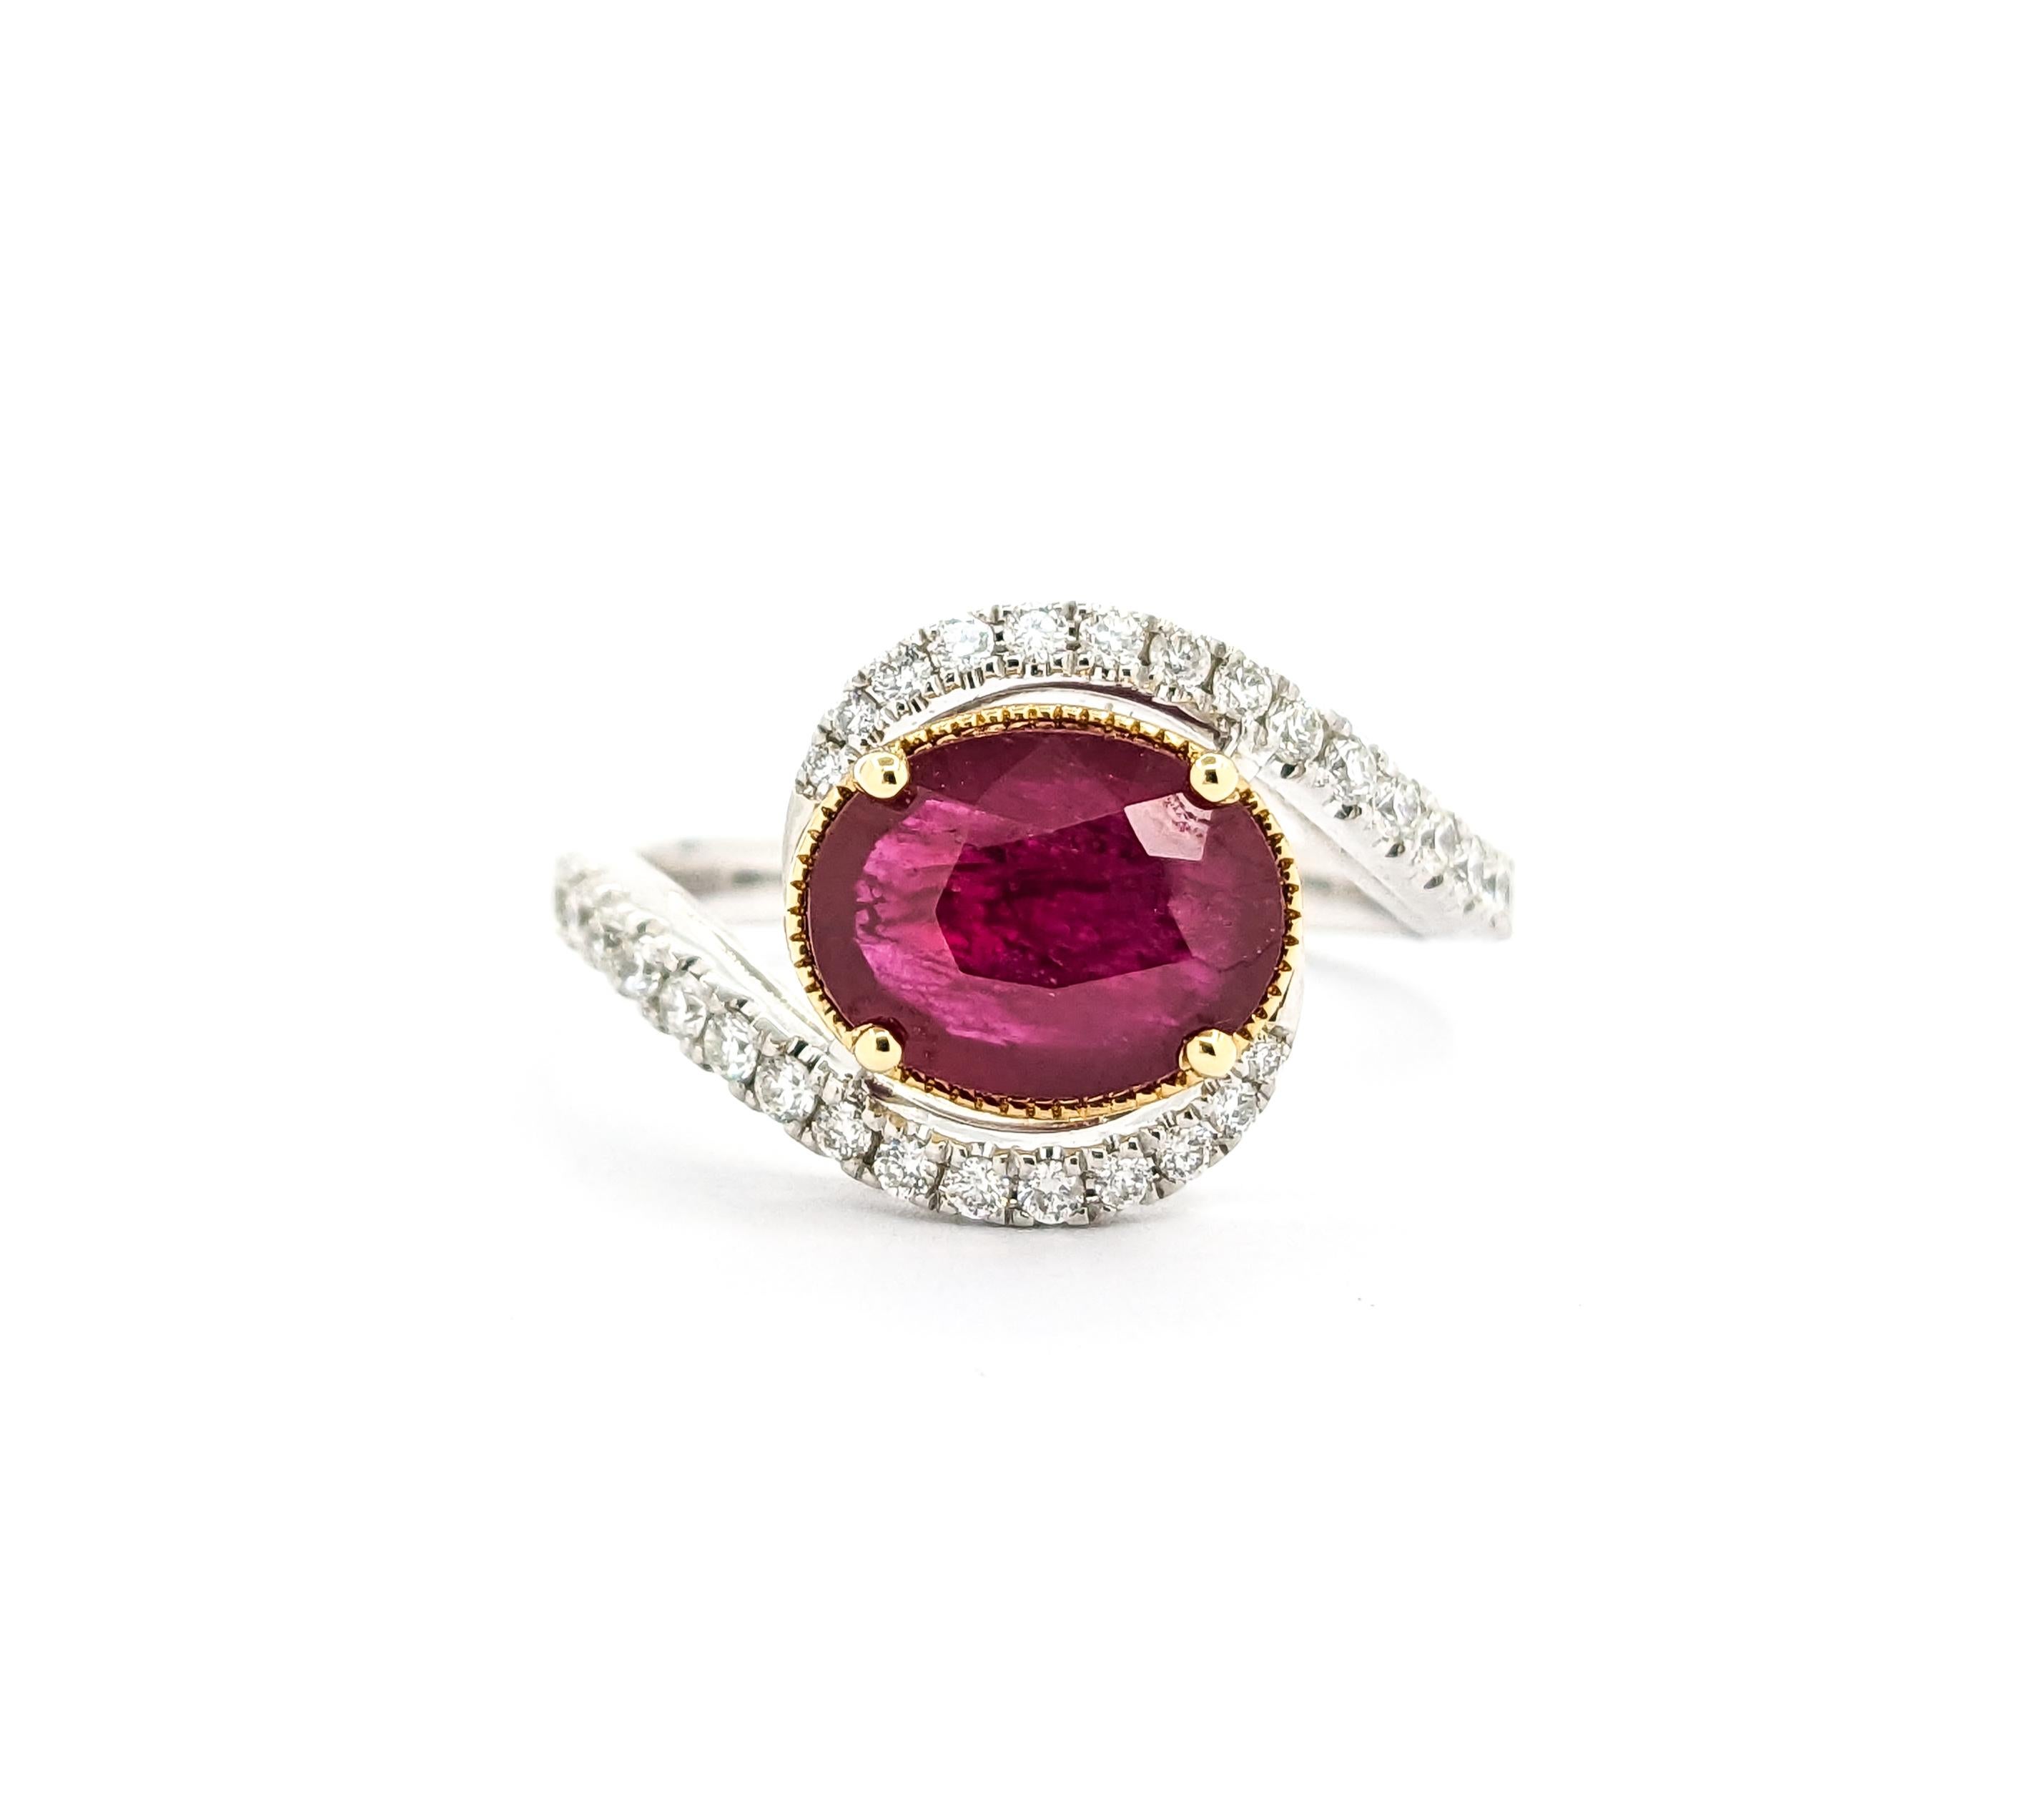 1,8ct Rubin & .34ctw Diamant Ring in Platin

Dieser exquisite Ring ist fein in 950pt Platin gefertigt und präsentiert einen atemberaubenden .34ctw Diamanten gepaart mit einem faszinierenden 1.8ctw ovalen Rubin. Die Diamanten glänzen mit einer